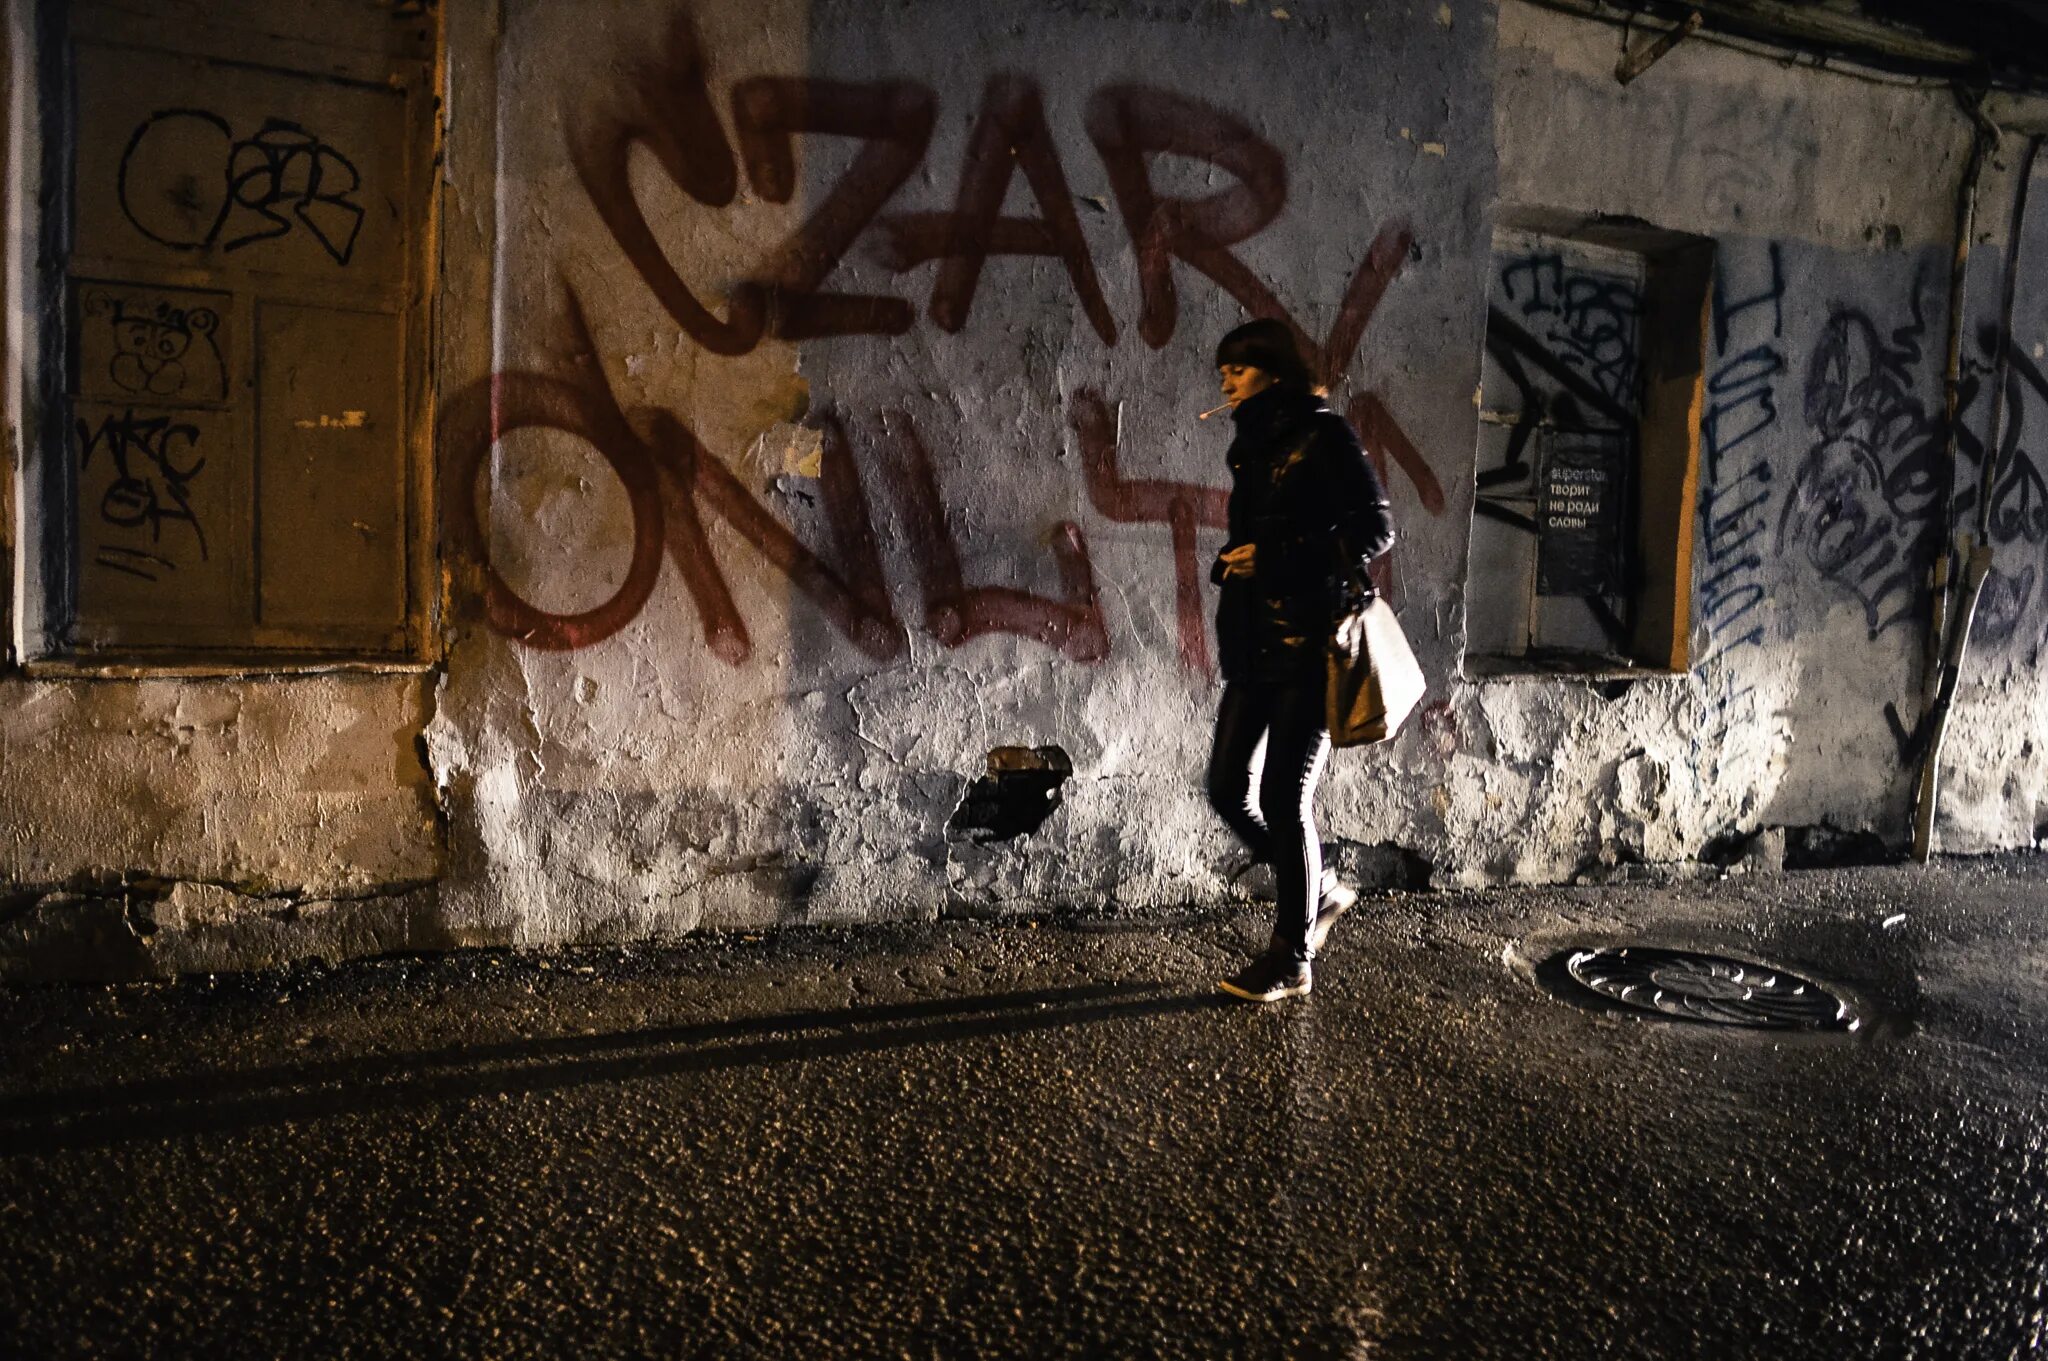 Граффити ночью. Граффити на улице. Стена в подворотне. Переулок с граффити.